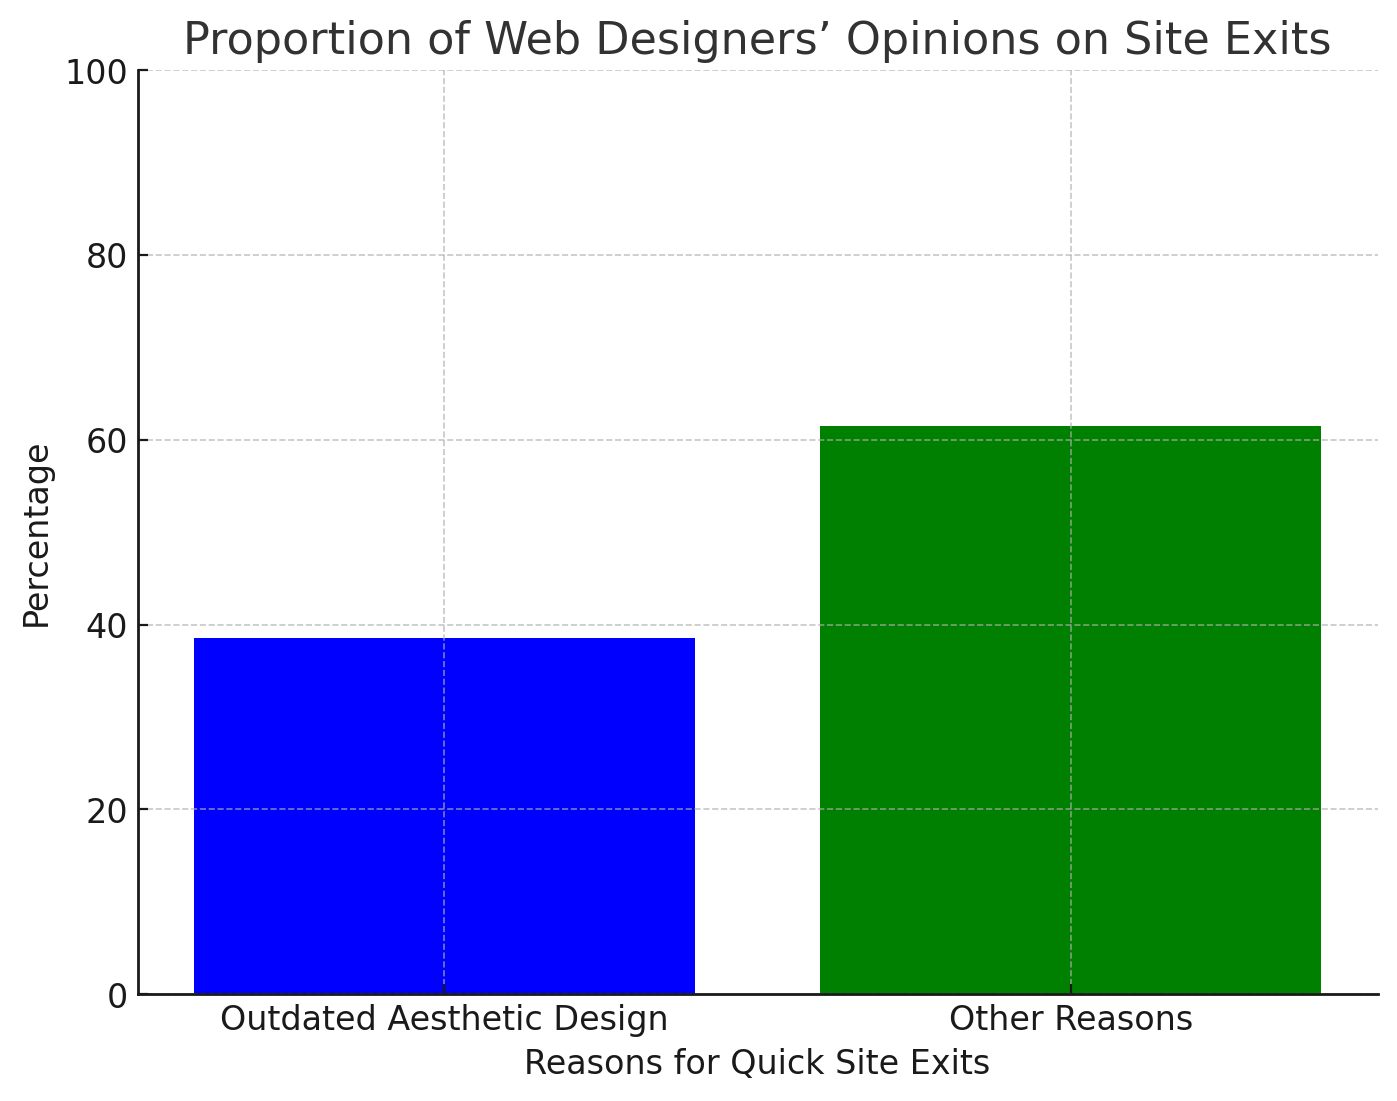 38.5% Concern Over Outdated Website Design